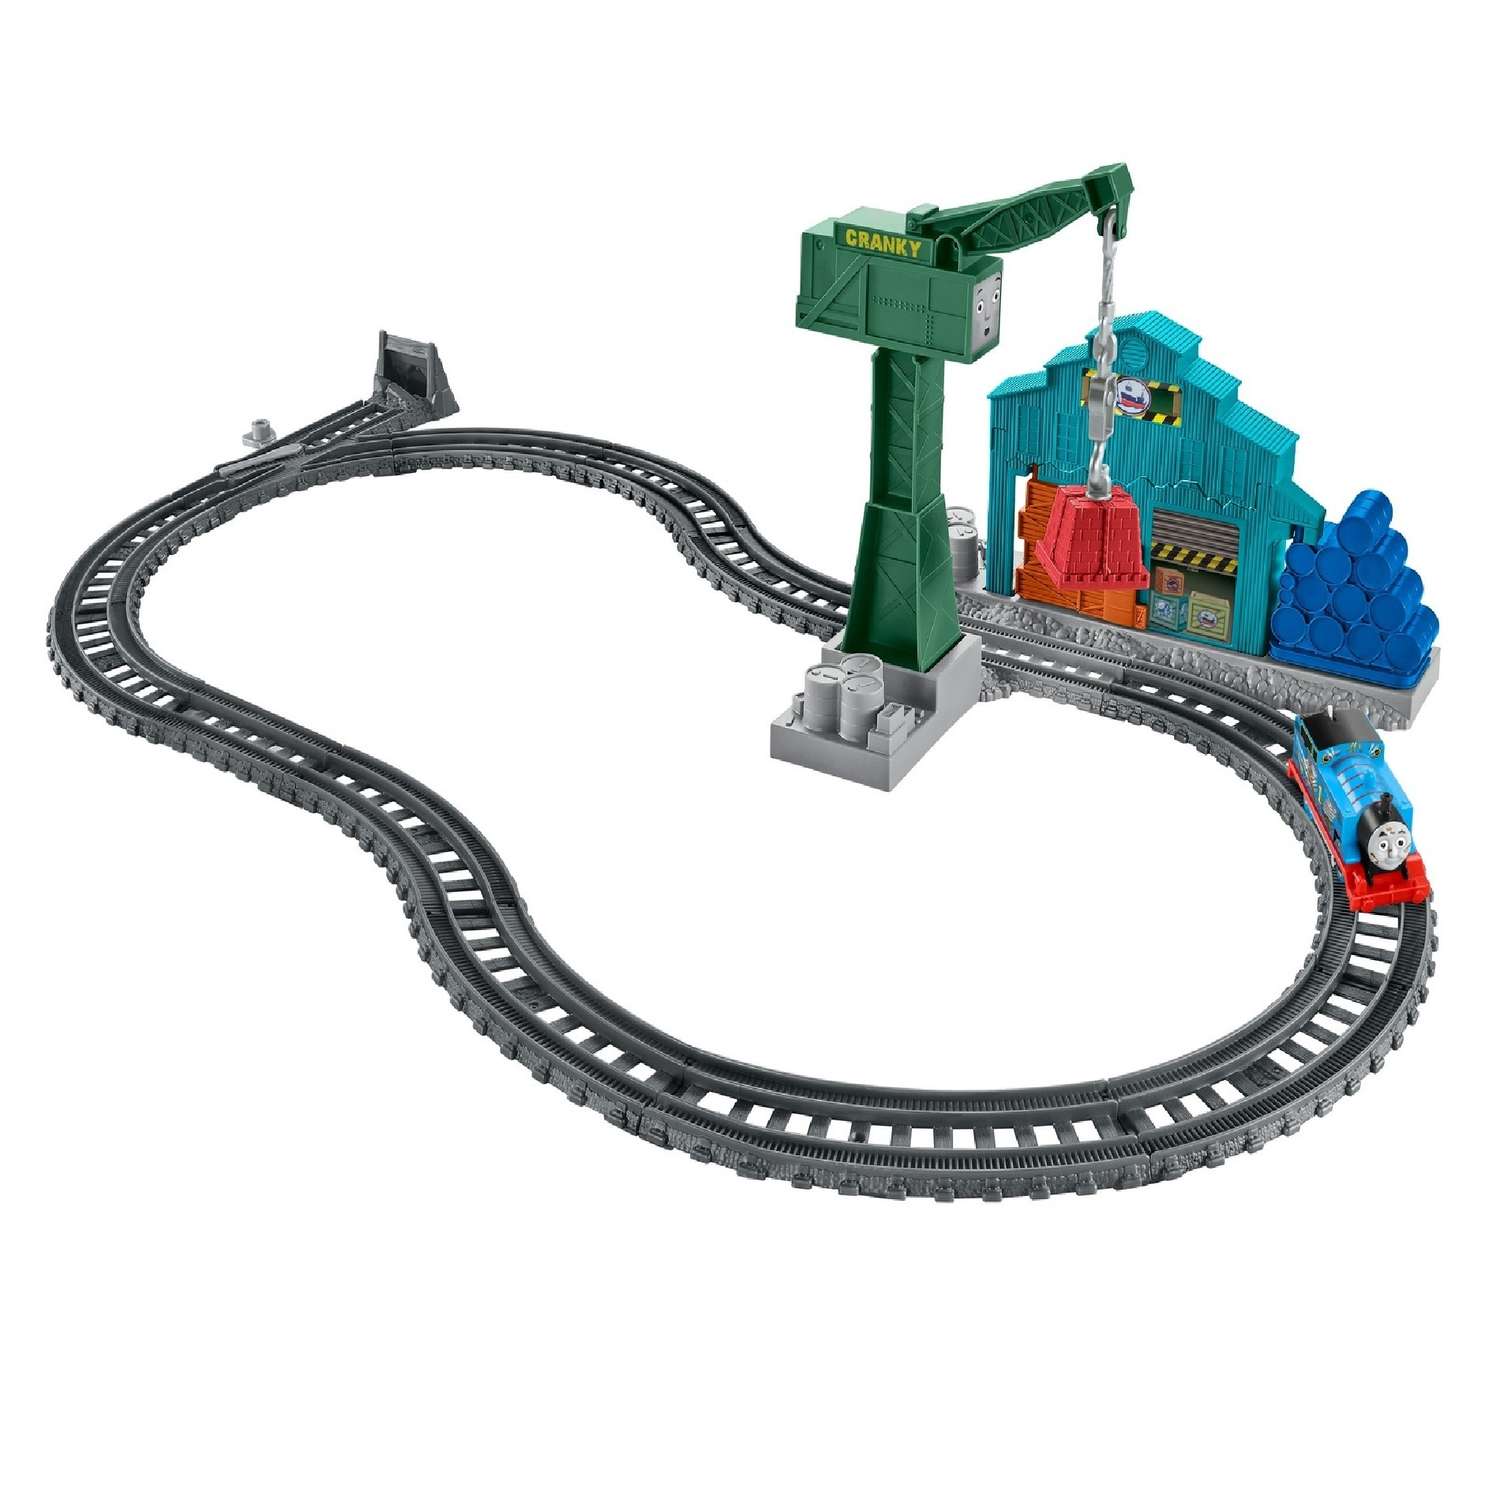 Игровой набор Thomas & Friends с паровозиком Томасом и подъемным краном Крэнки DVF73 - фото 1